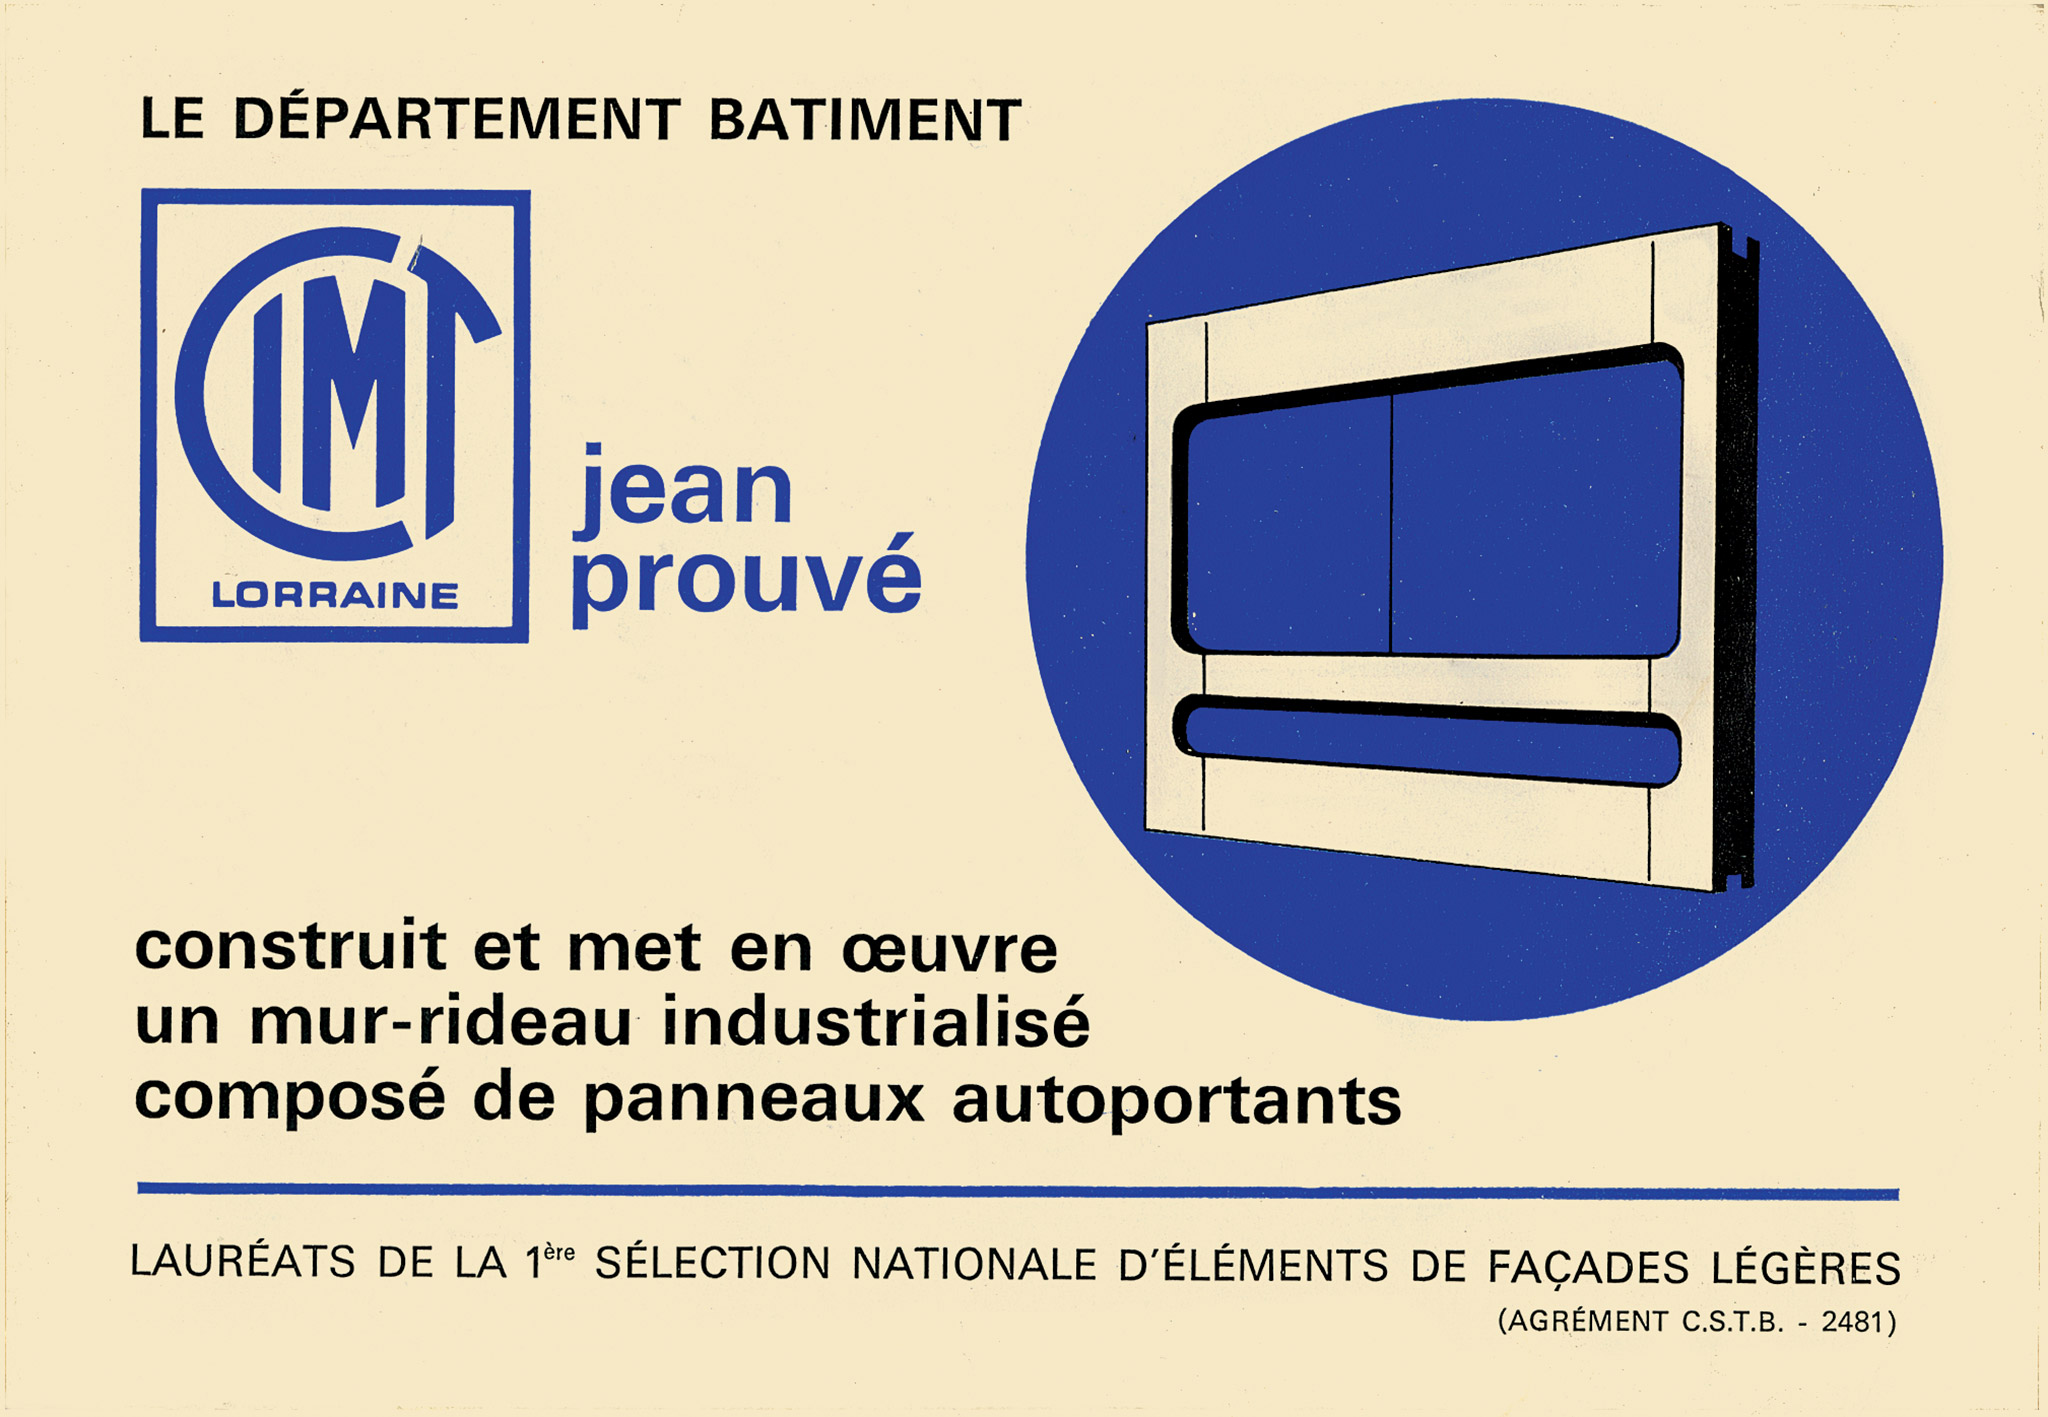 Publicité pour le mur-rideau industrialisé CIMT-Jean Prouvé Lorraine, c. 1964.